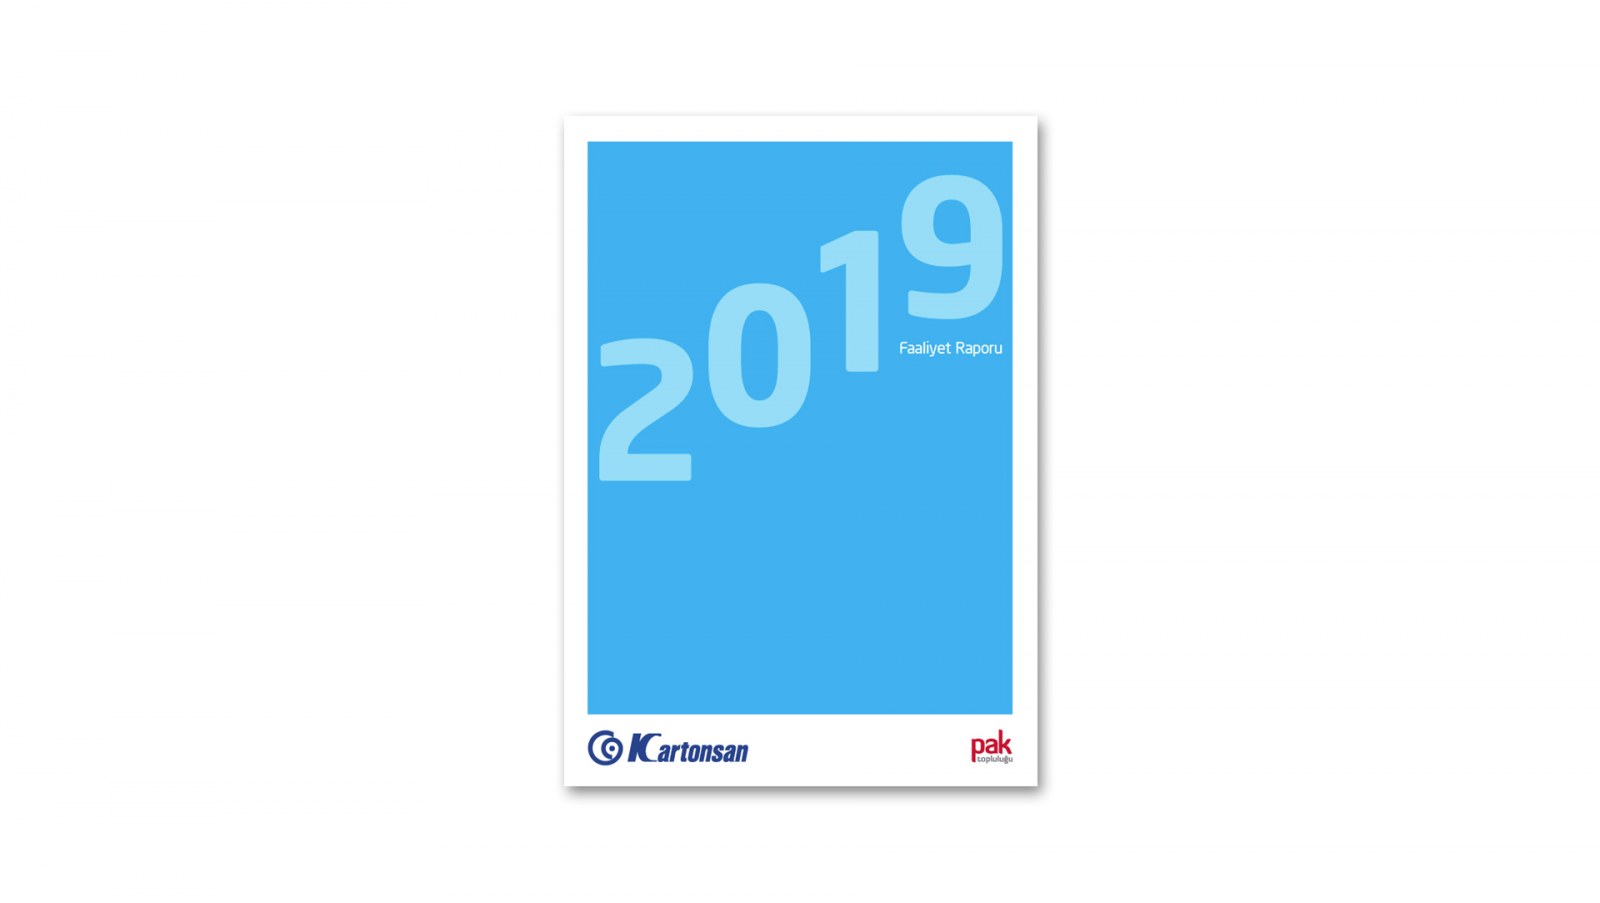 KARTONSAN / 2019 Faaliyet Raporu / 2019 Annual Report